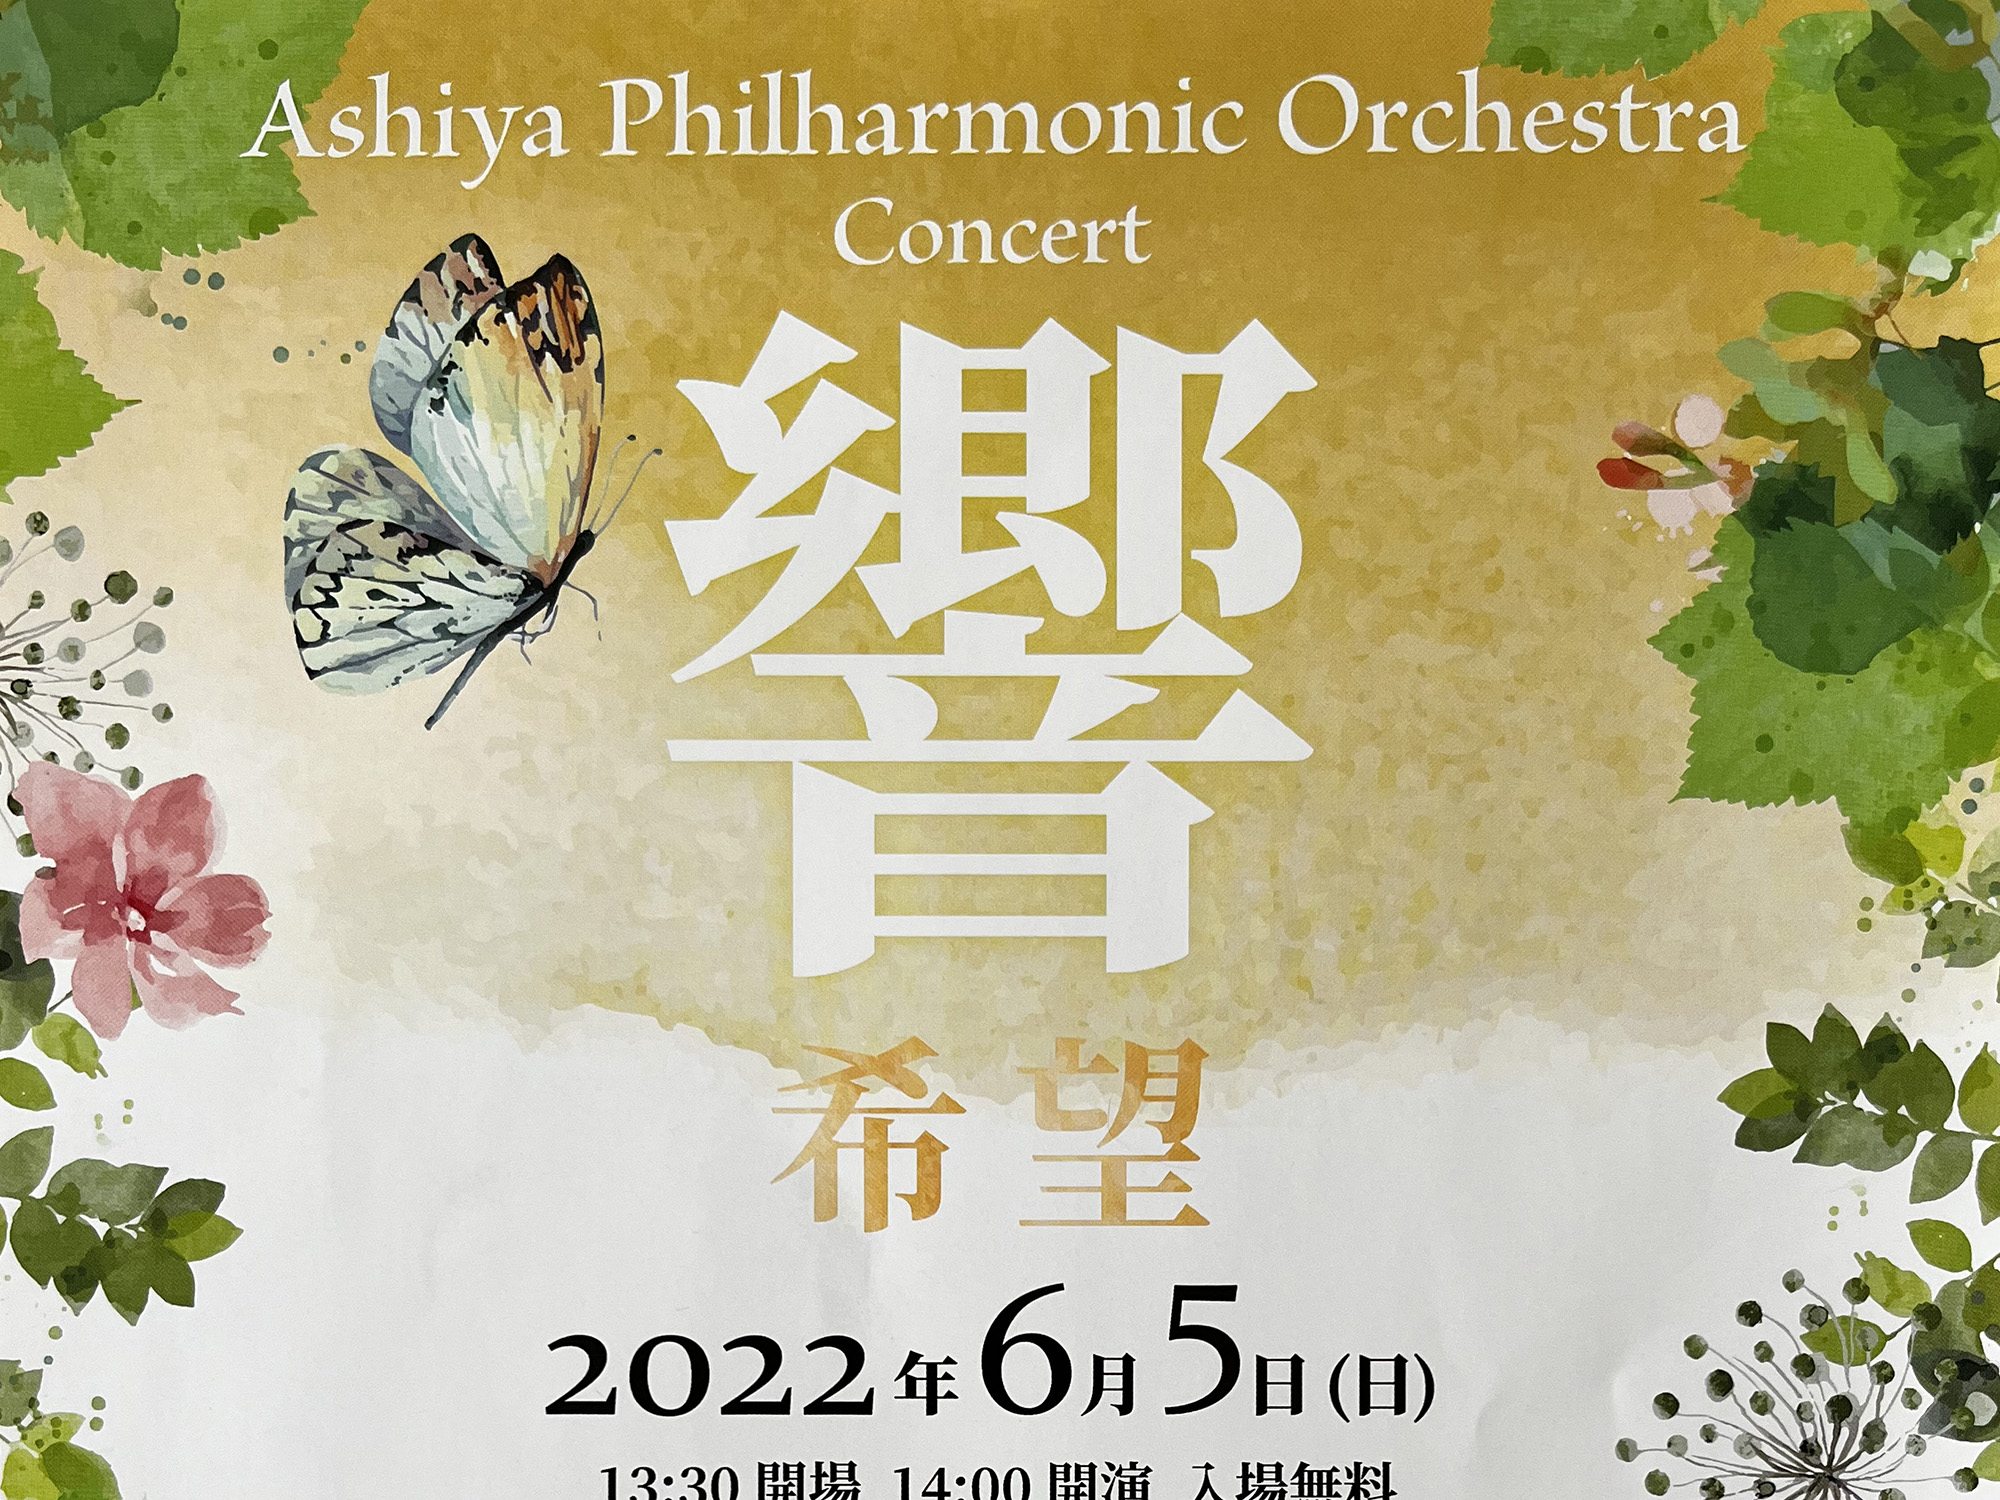 2022年6月5日 芦屋フィルハーモニー管弦楽団 コンサート「響」